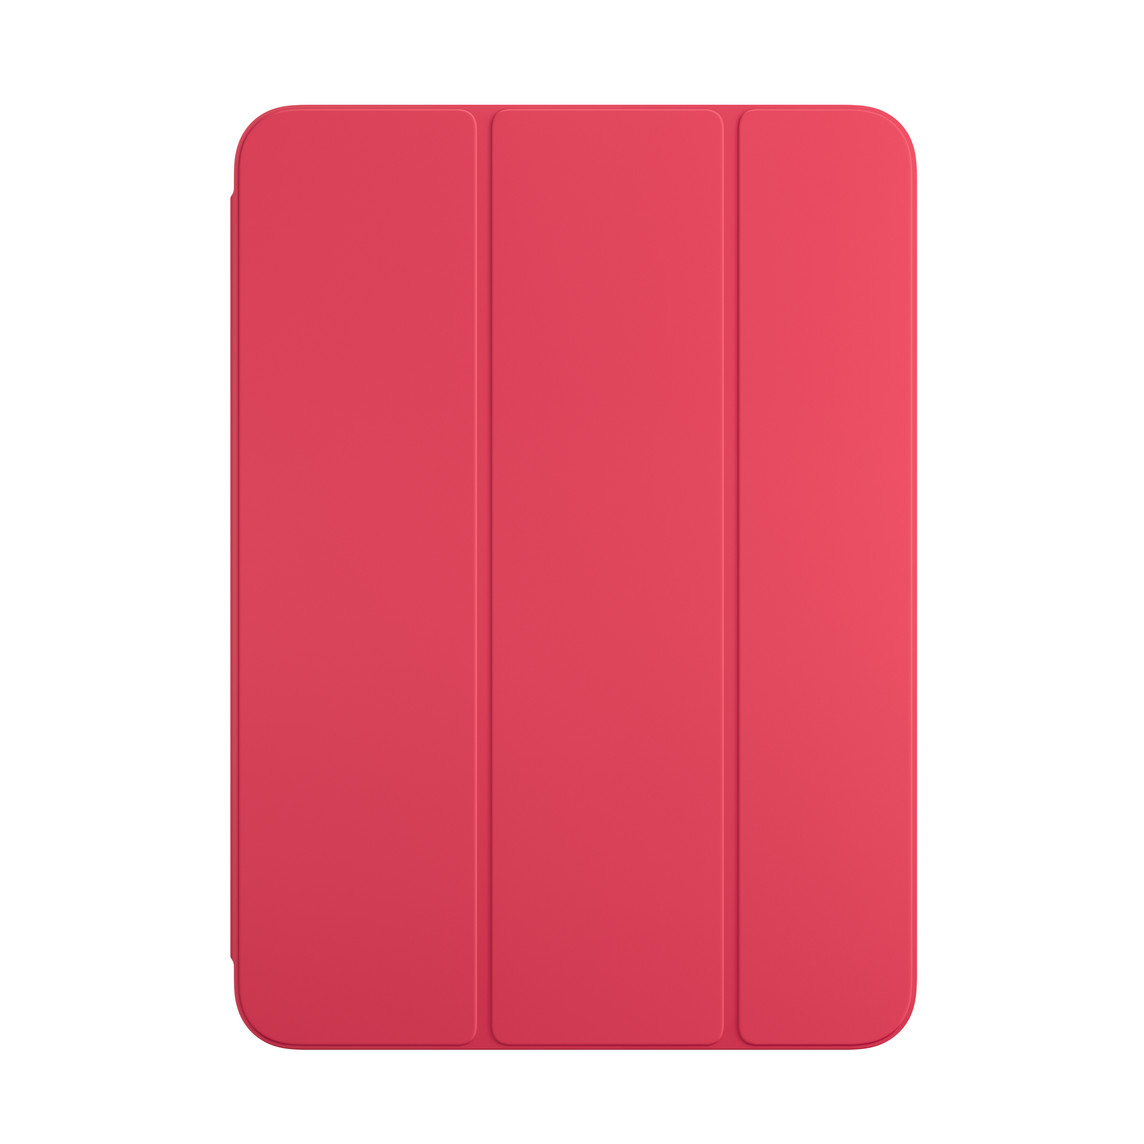 Hình ảnh mặt trước của Smart Folio màu Đỏ Dưa cho iPad.